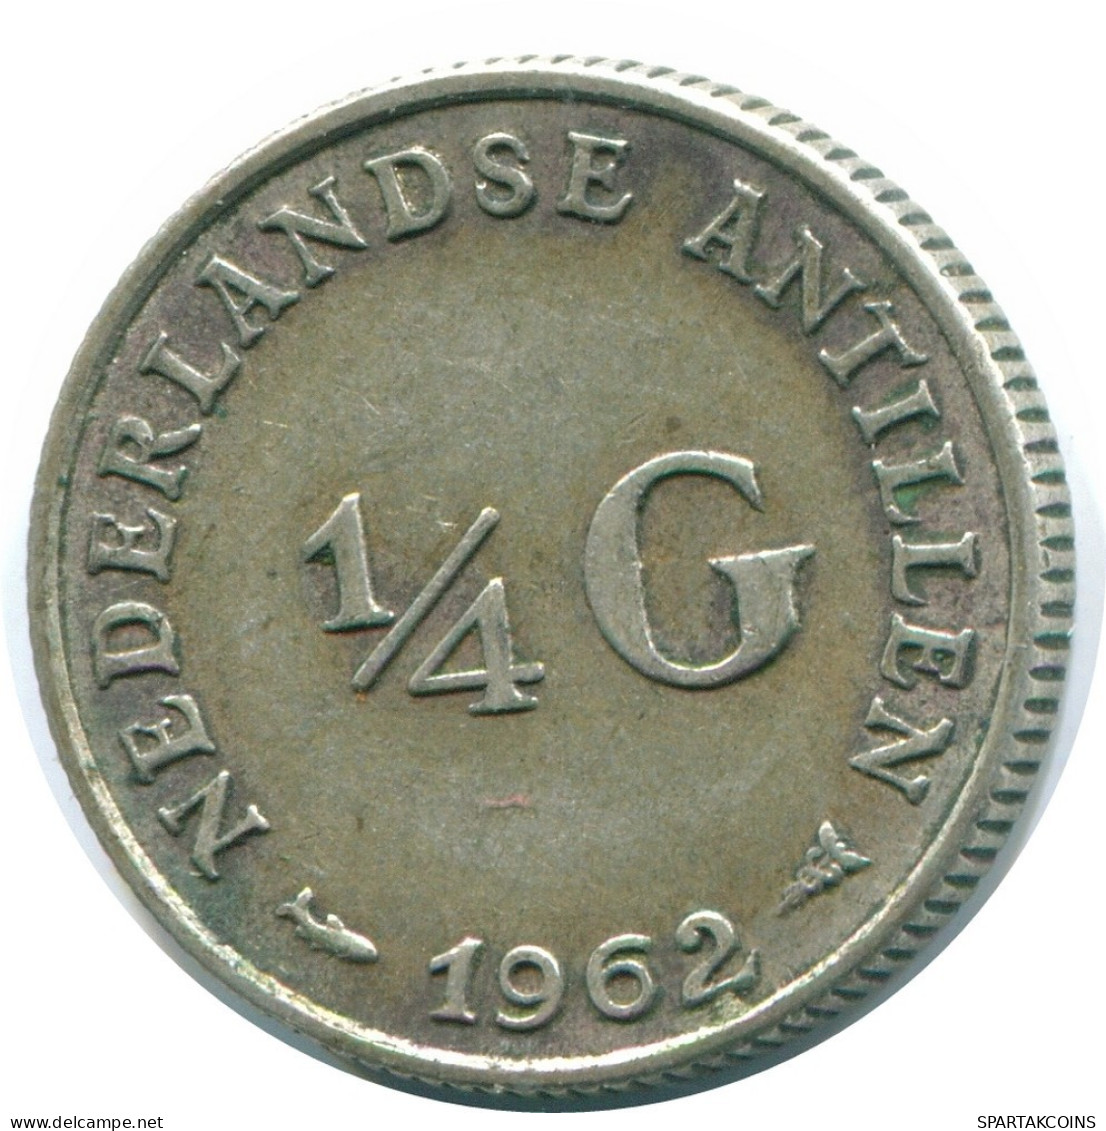 1/4 GULDEN 1962 NIEDERLÄNDISCHE ANTILLEN SILBER Koloniale Münze #NL11156.4.D.A - Antilles Néerlandaises